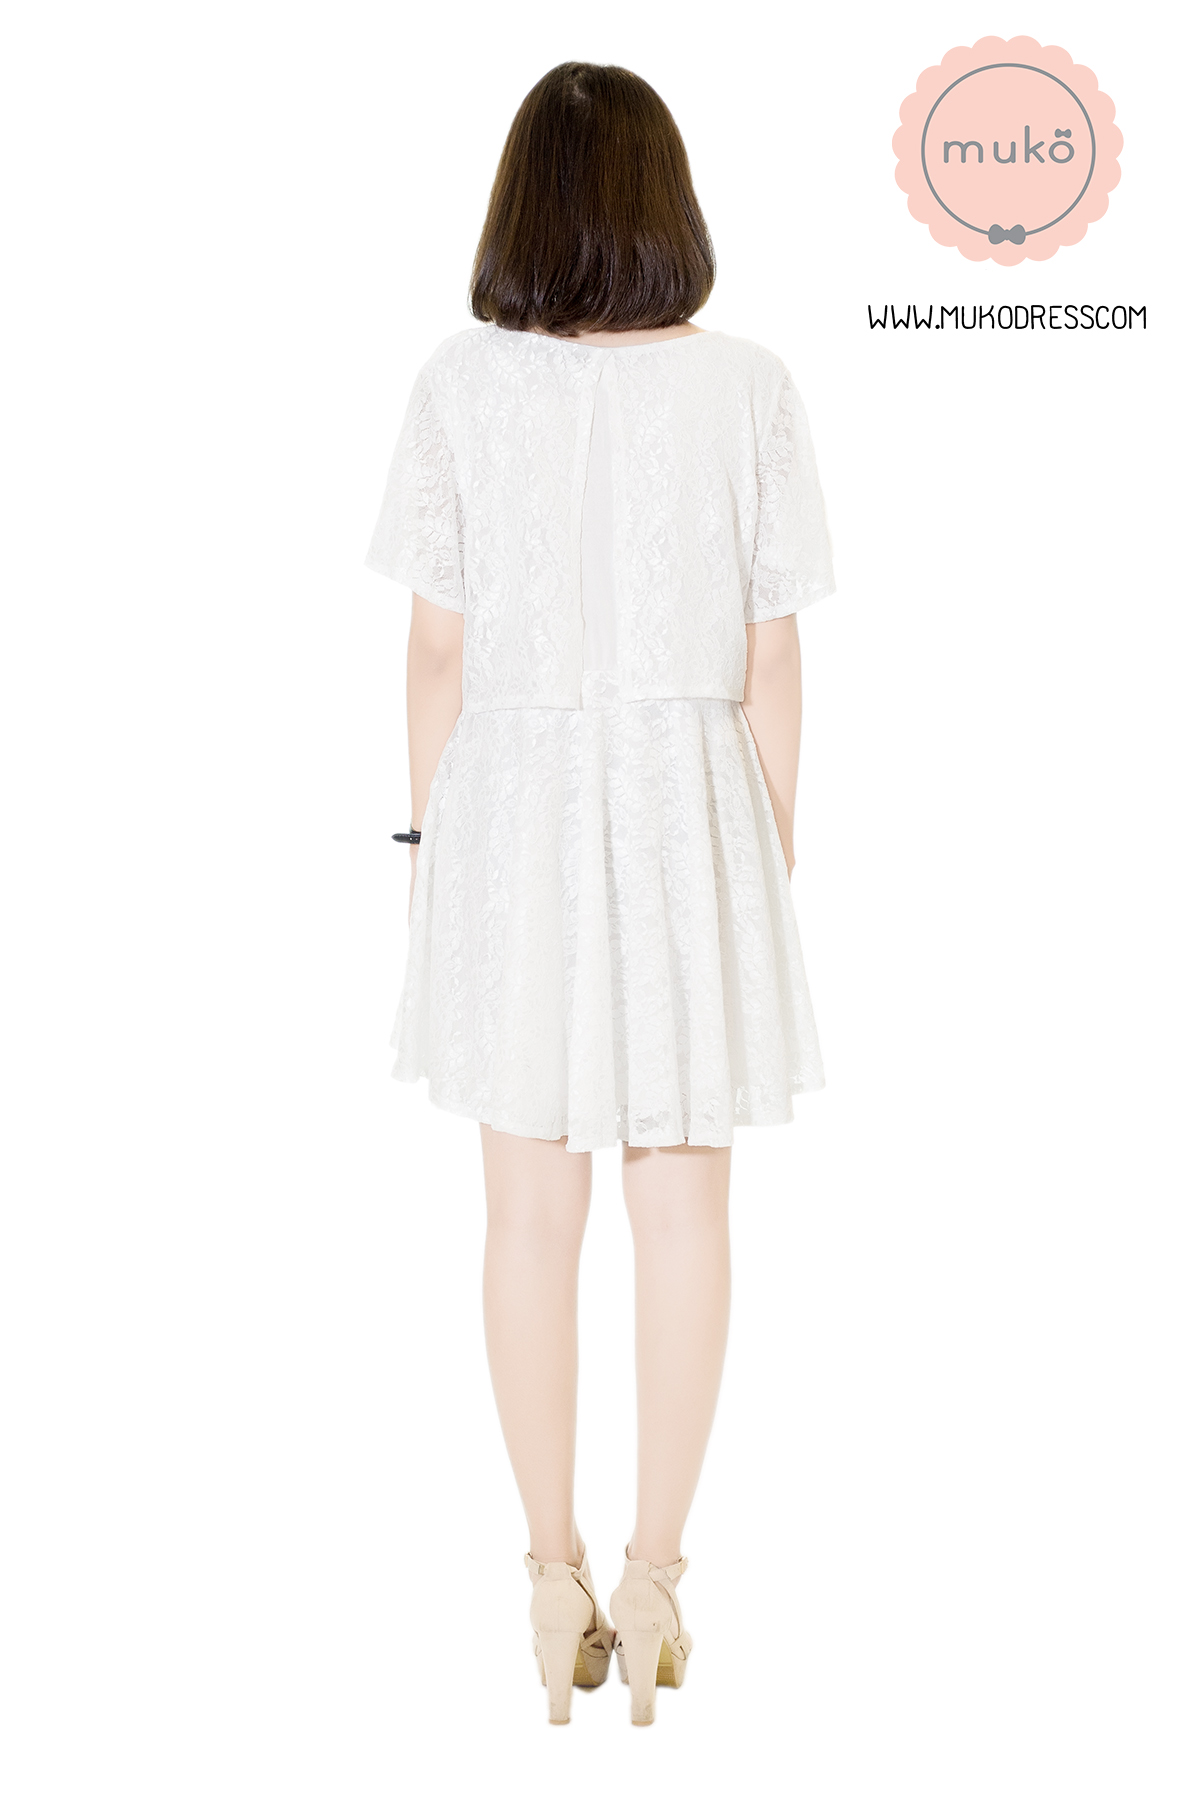 Muko Nico Lace Dress เดรสคลุมท้อง เปิดให้นม DZ22-007 ขาว